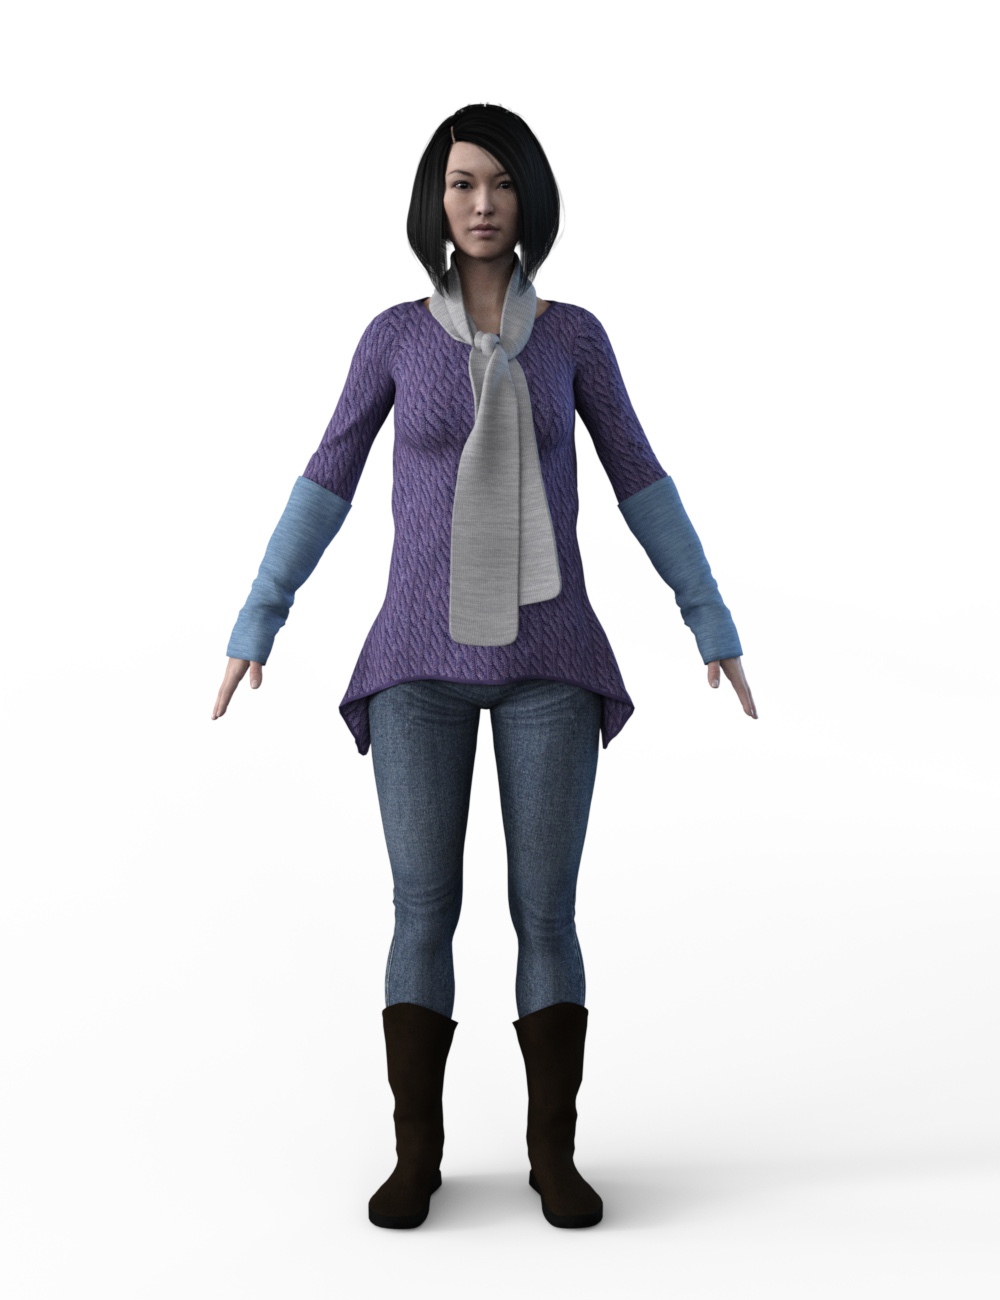 FBX- Base Female Vigilante Outfit by: Paleo, 3D Models by Daz 3D